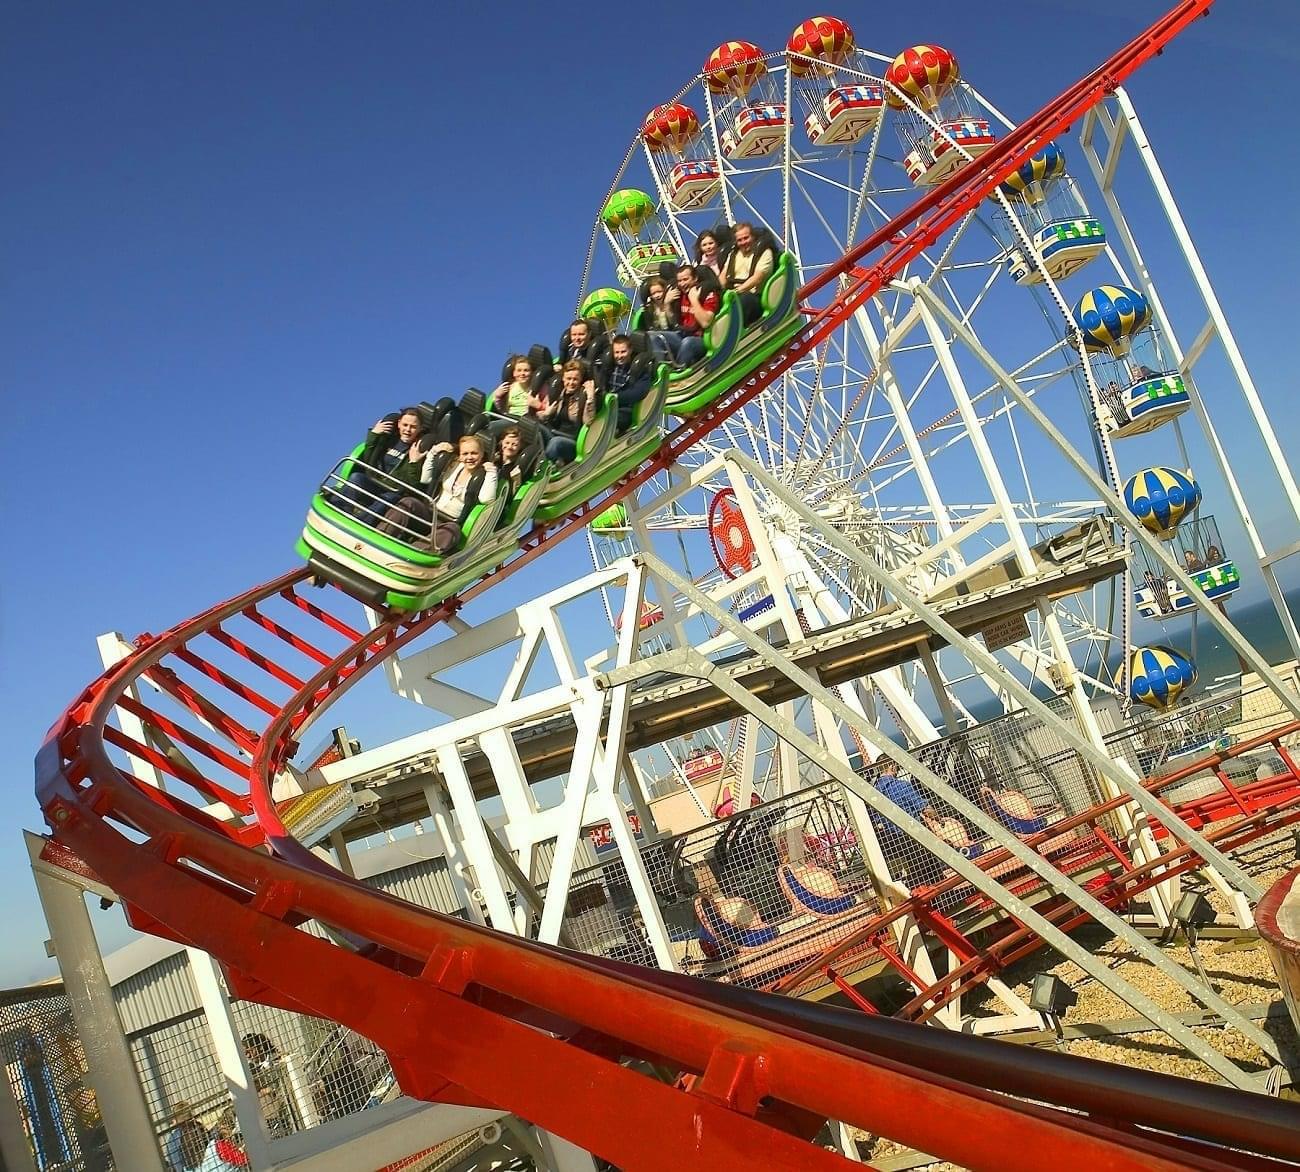 Codona's Amusement Park Overview